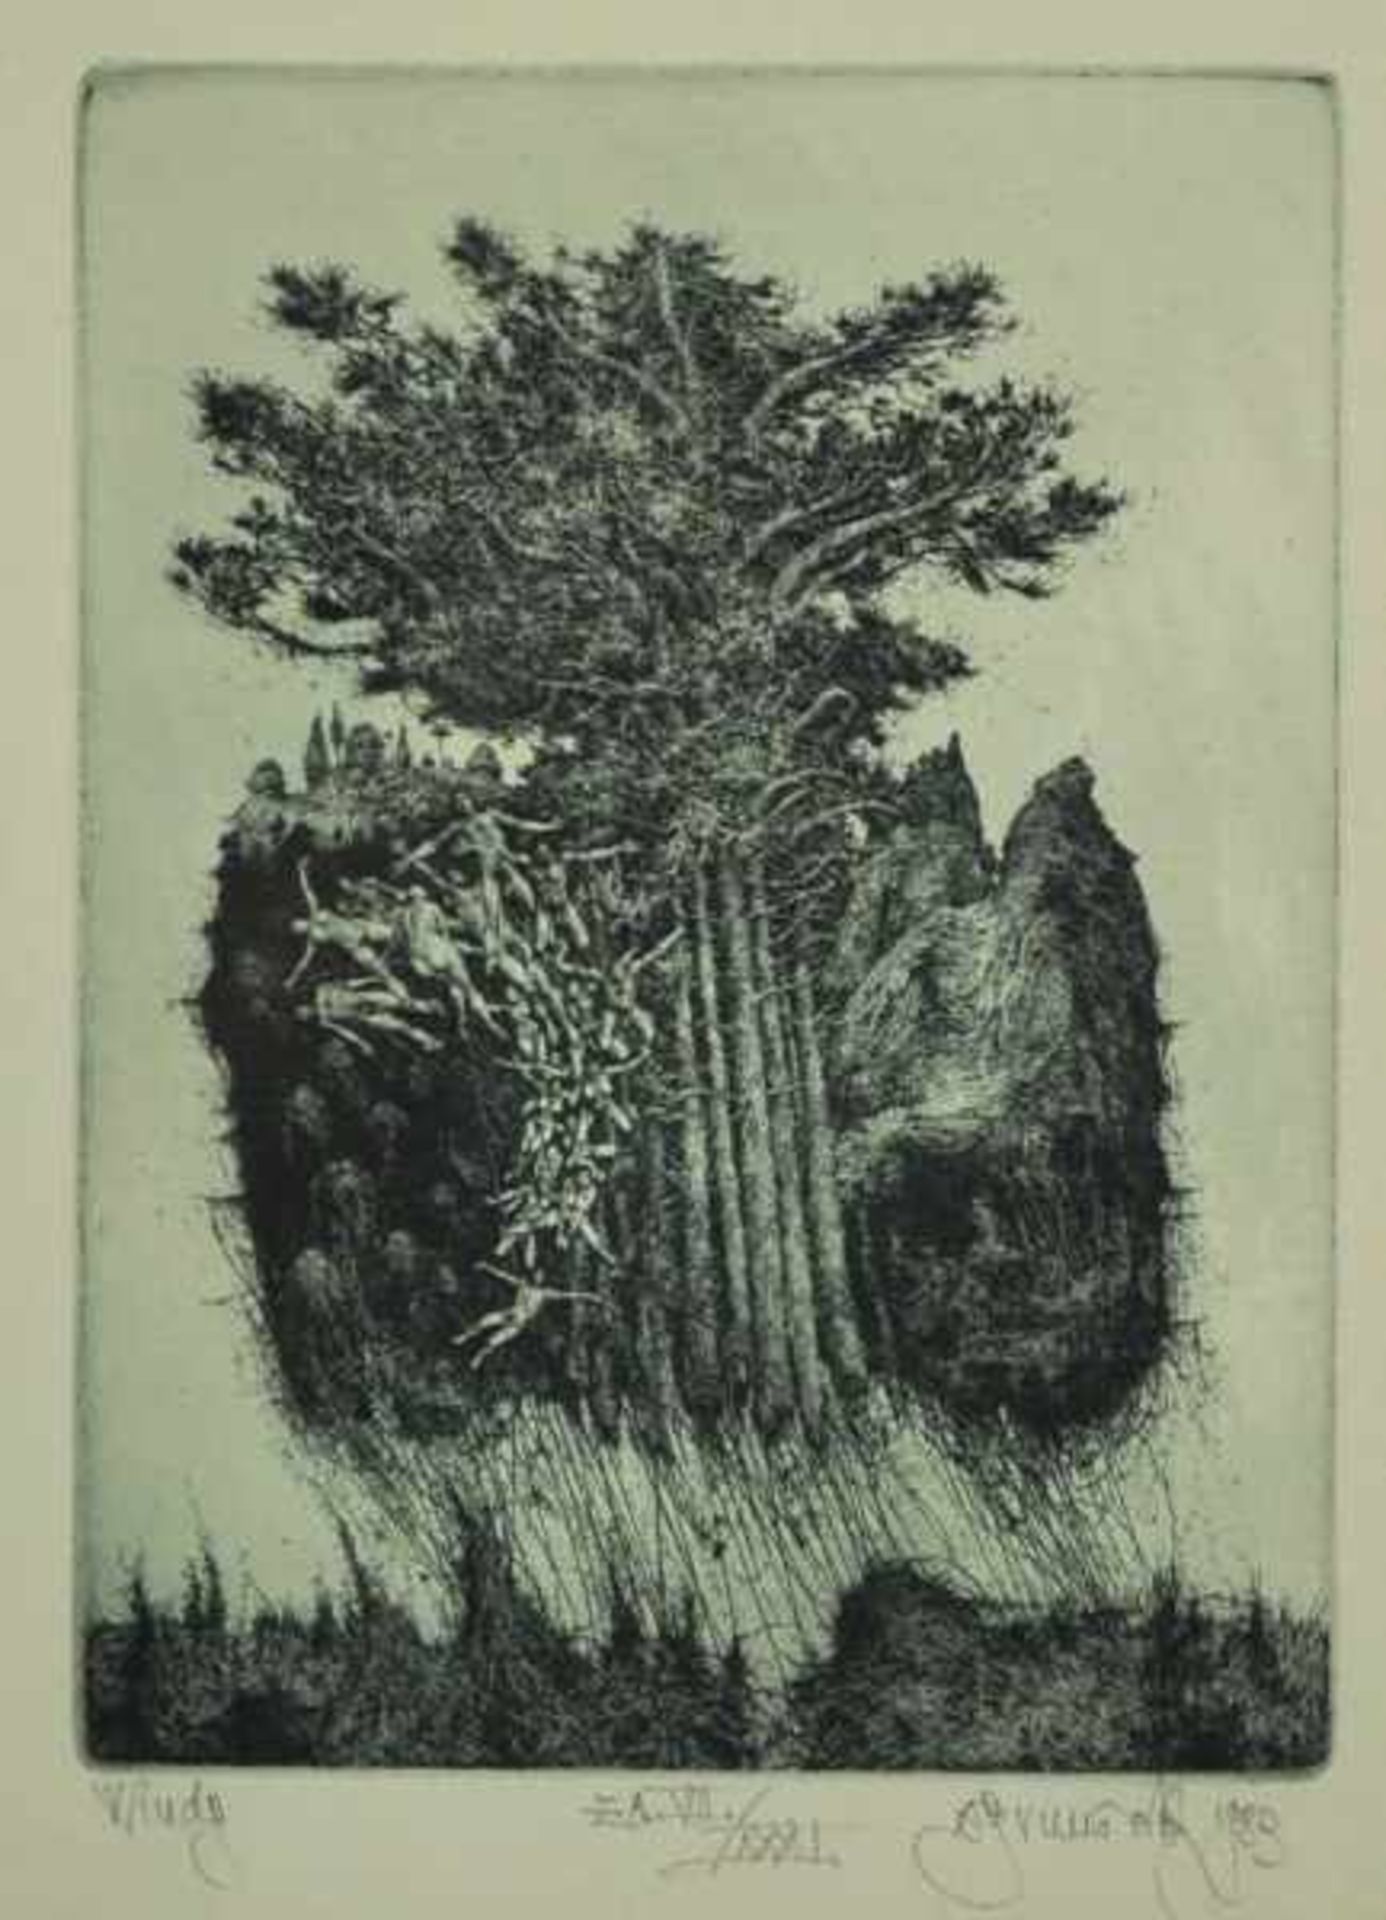 BRUNOVSKY Albin (1935 Zohor - 1997 Bratislava) "Windy", schwebende entwurzelte Bäume mit nackten